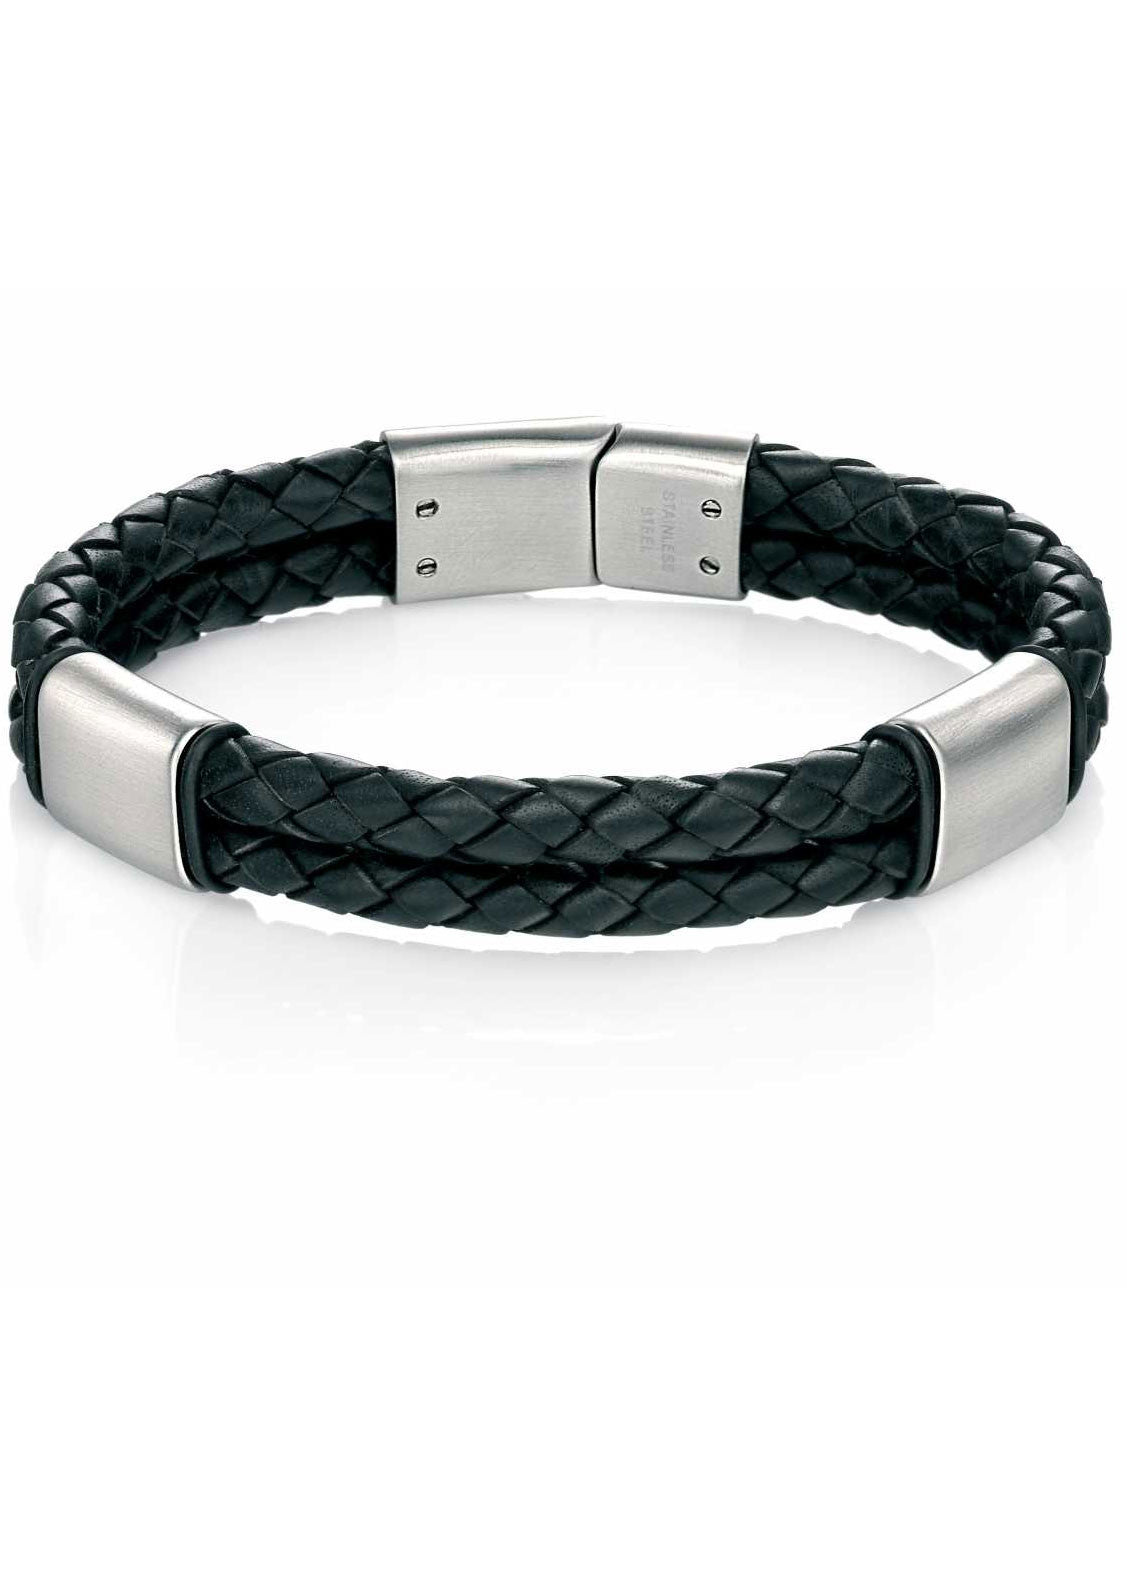 Fred Bennett Stainless Steel Mens Black Leather Bracelet - B4373